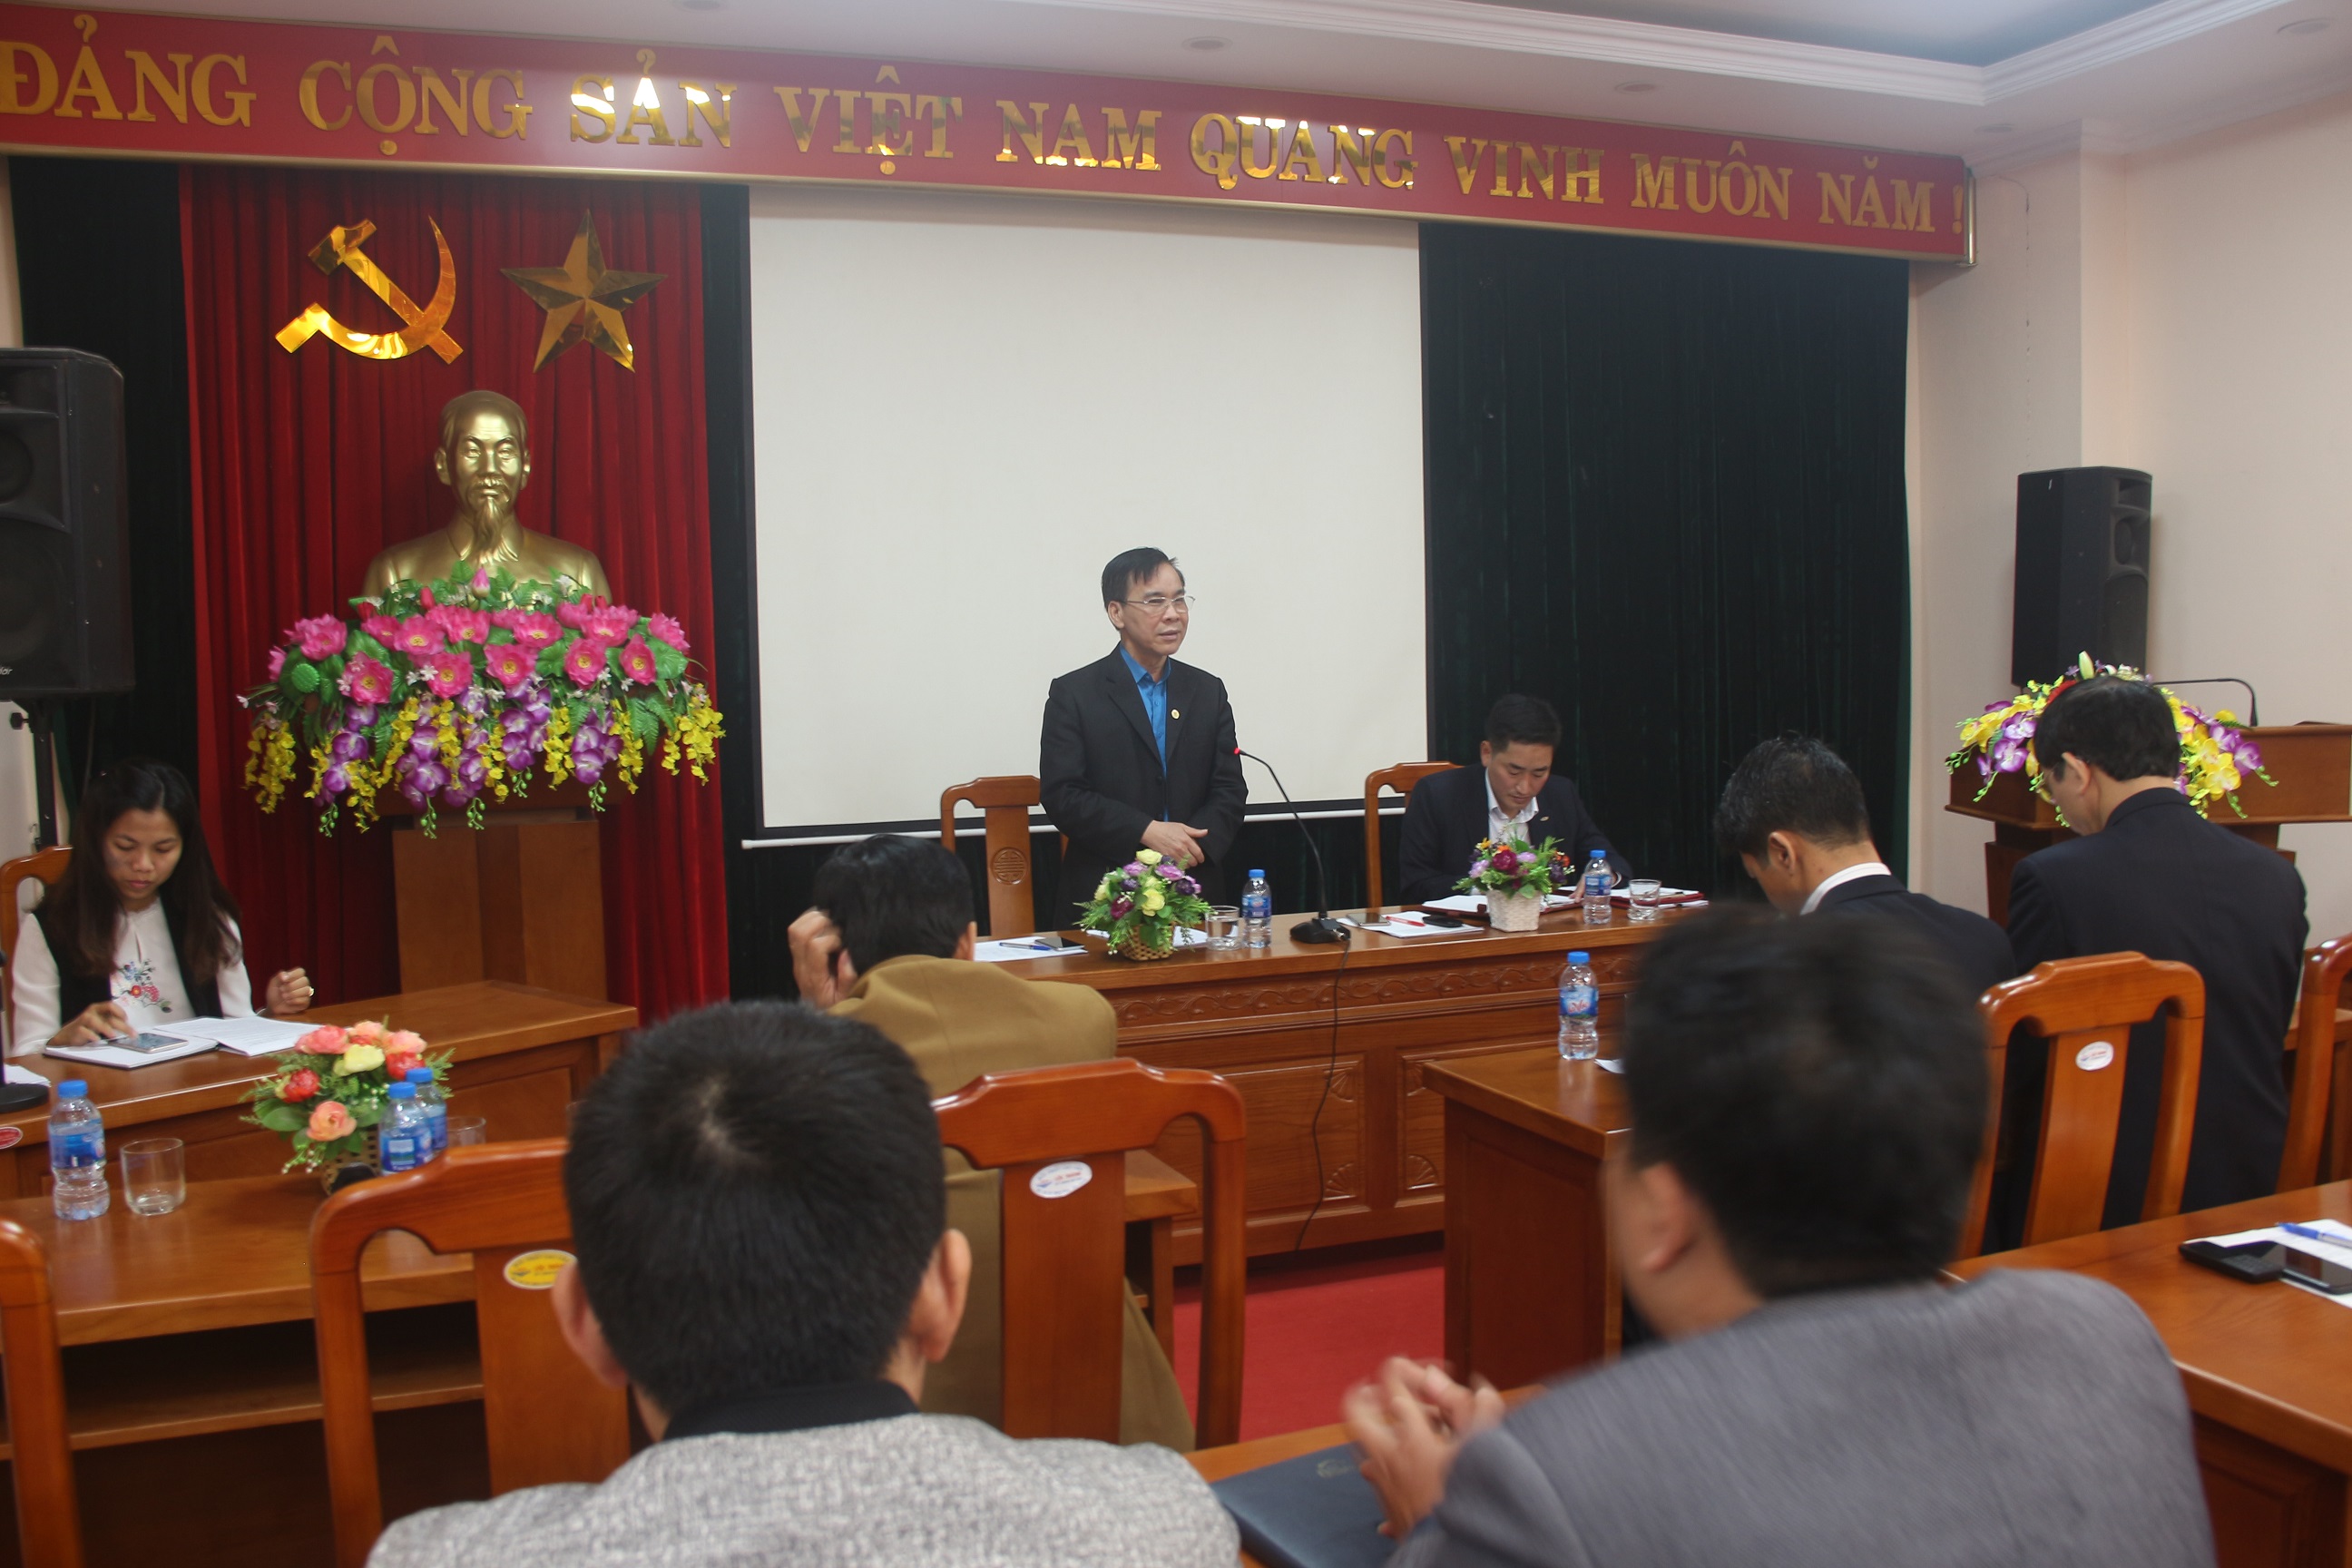 Sở Công Thương Bắc Giang tổ chức Hội nghị công chức, viên chức và người lao động năm 2018